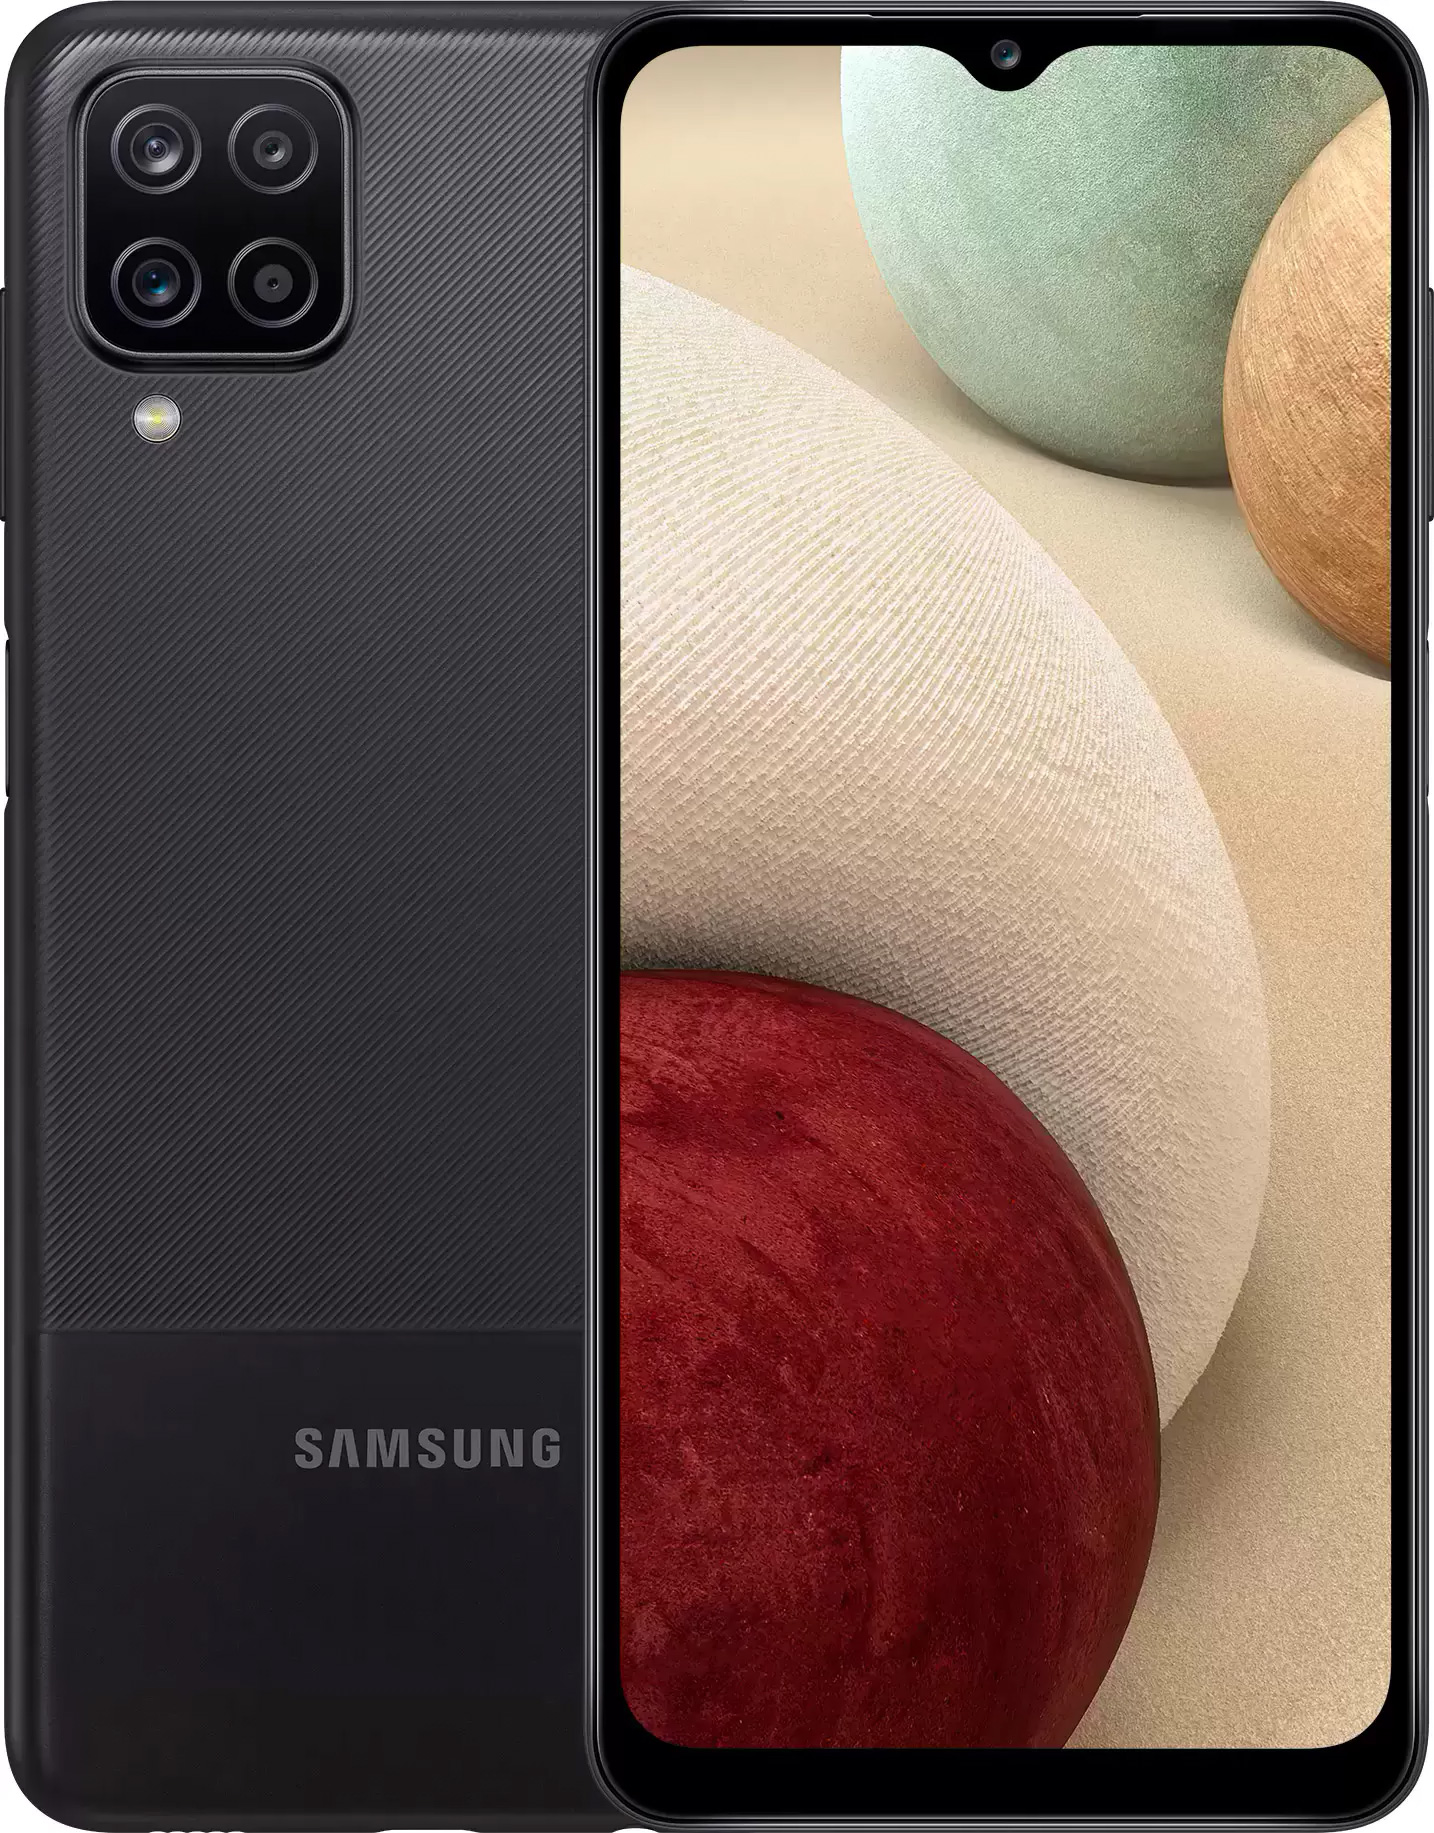 Смартфон Samsung Galaxy A12 64GB Black (SM-A127FZKVSER) Galaxy A12 64GB Black (SM-A127F)